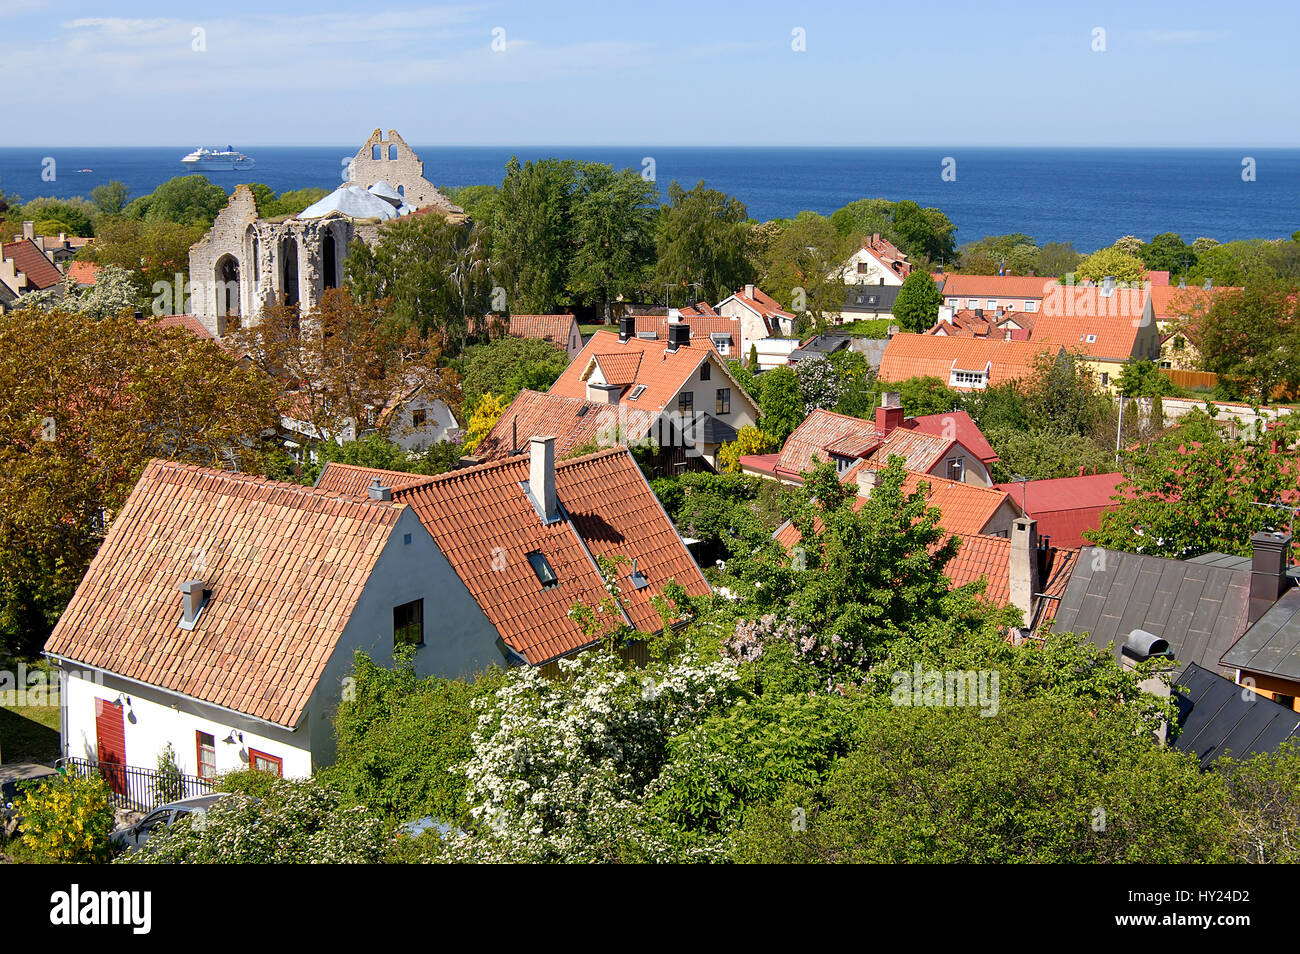 Lo stock foto mostra una vista sopra i tetti della città portuale di Visbyon l'isola di Gotland in Svezia. L'immagine è stata presa dalla parte superiore del Foto Stock